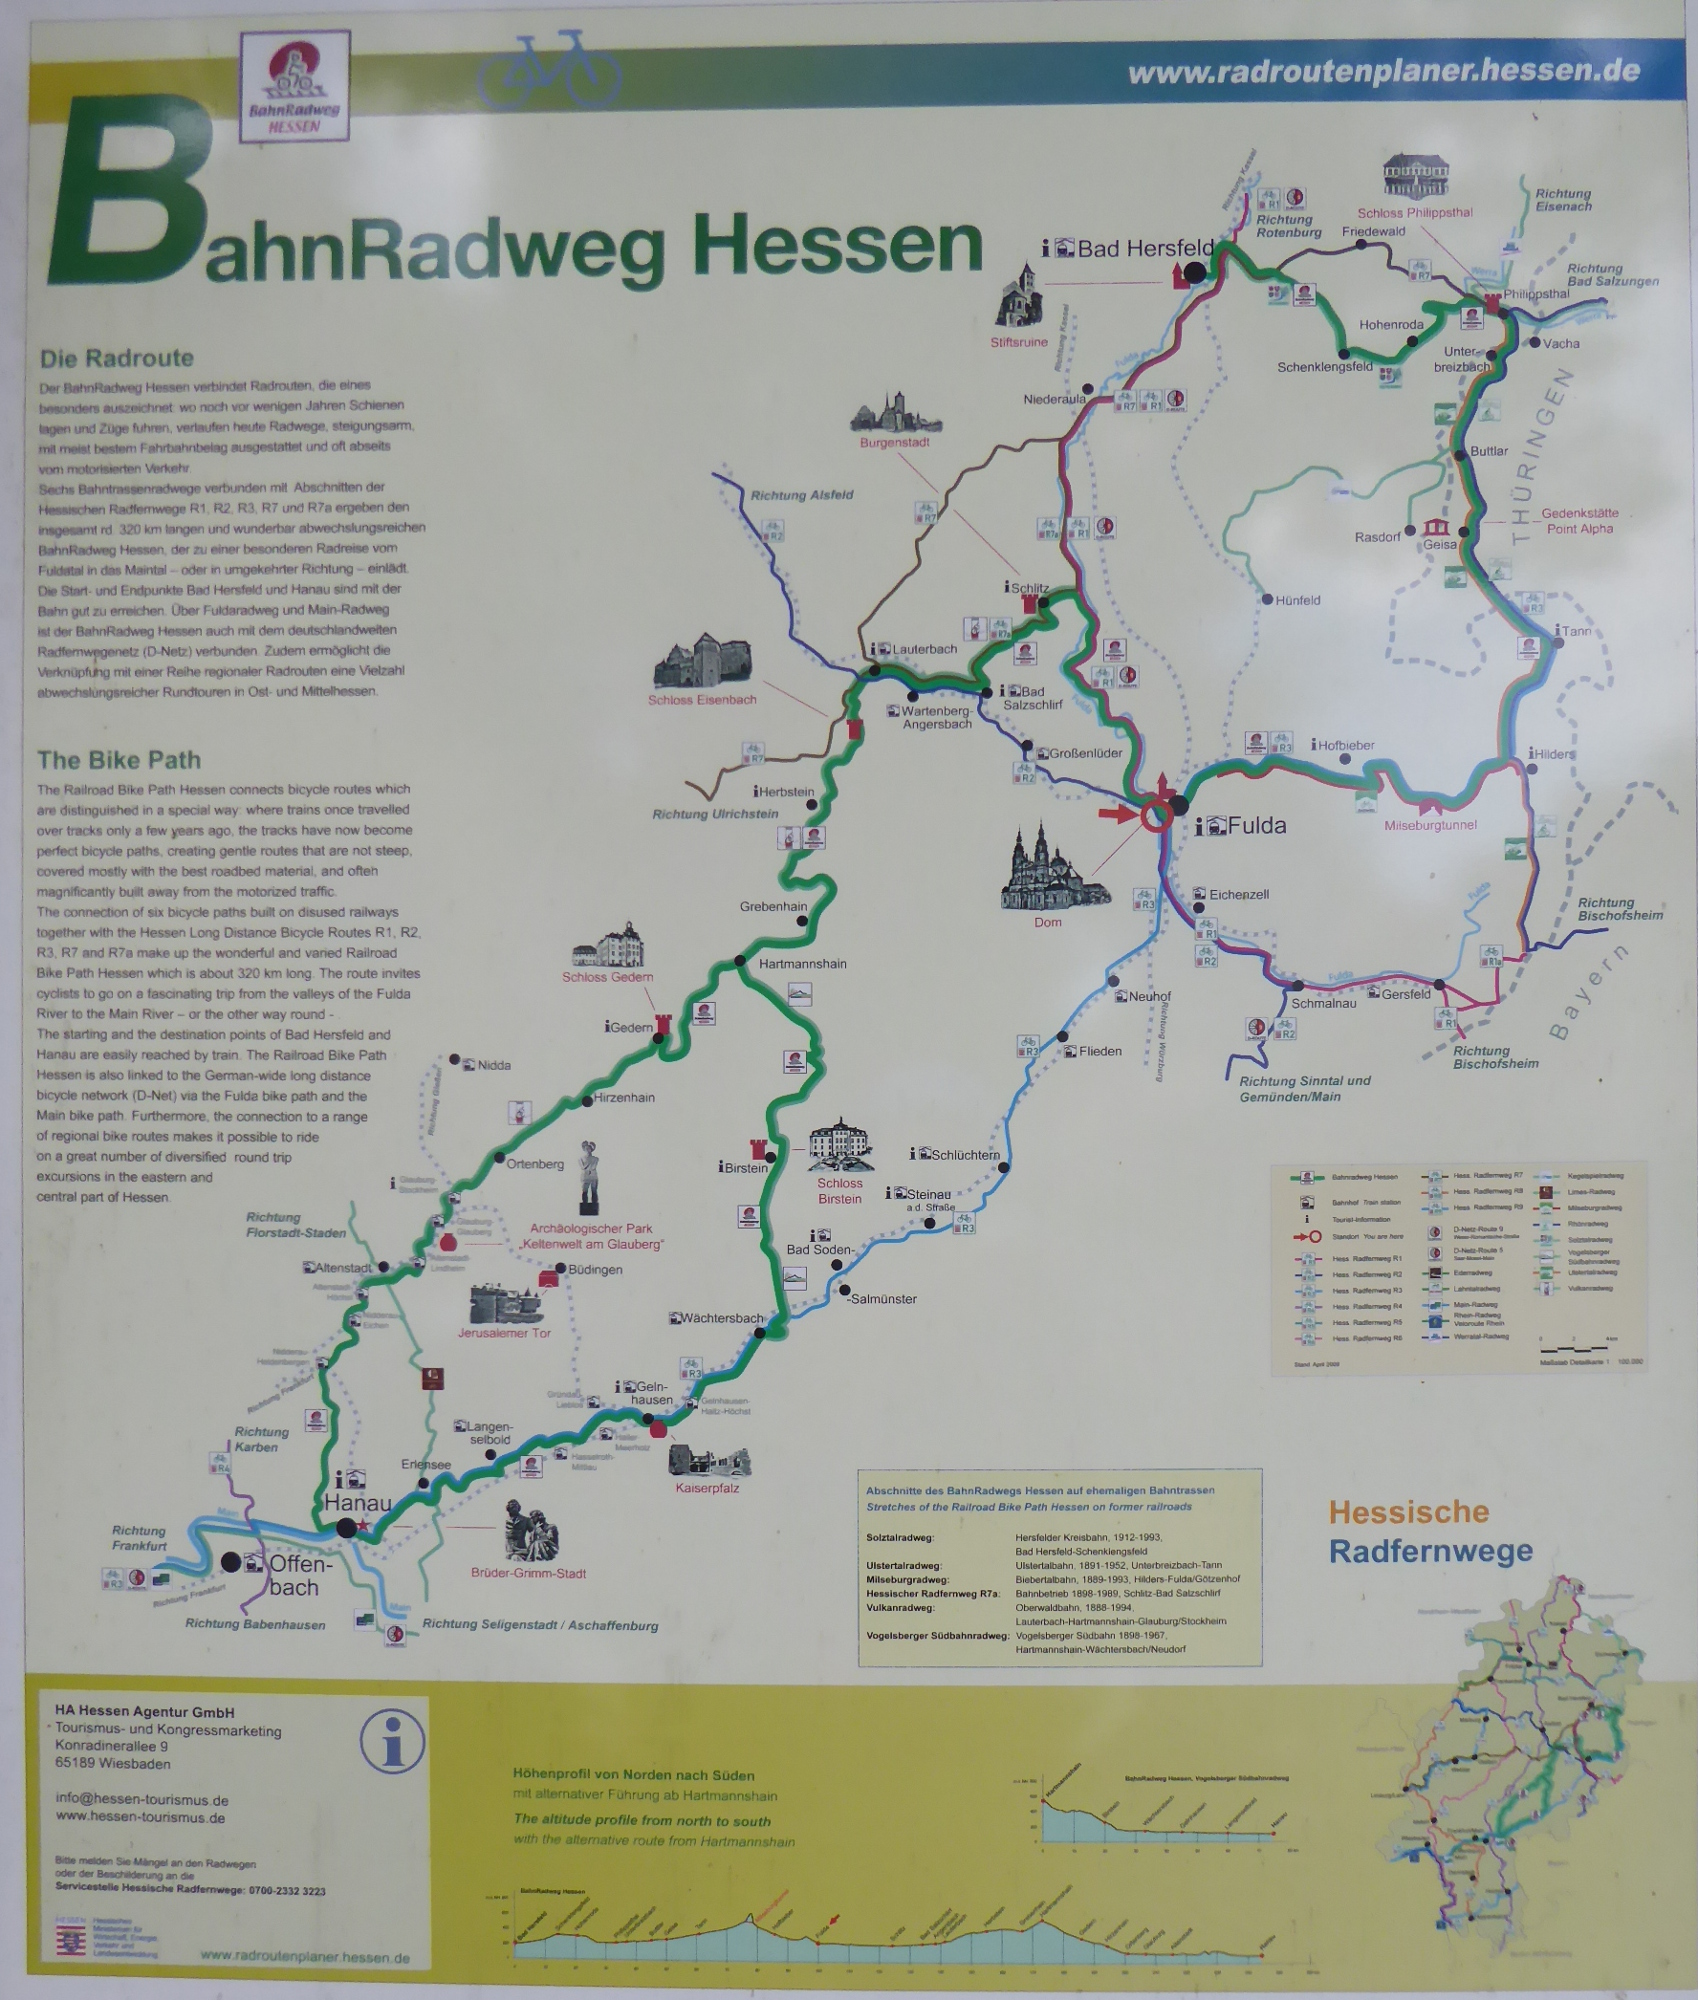 Bahnradweg Hessen Info